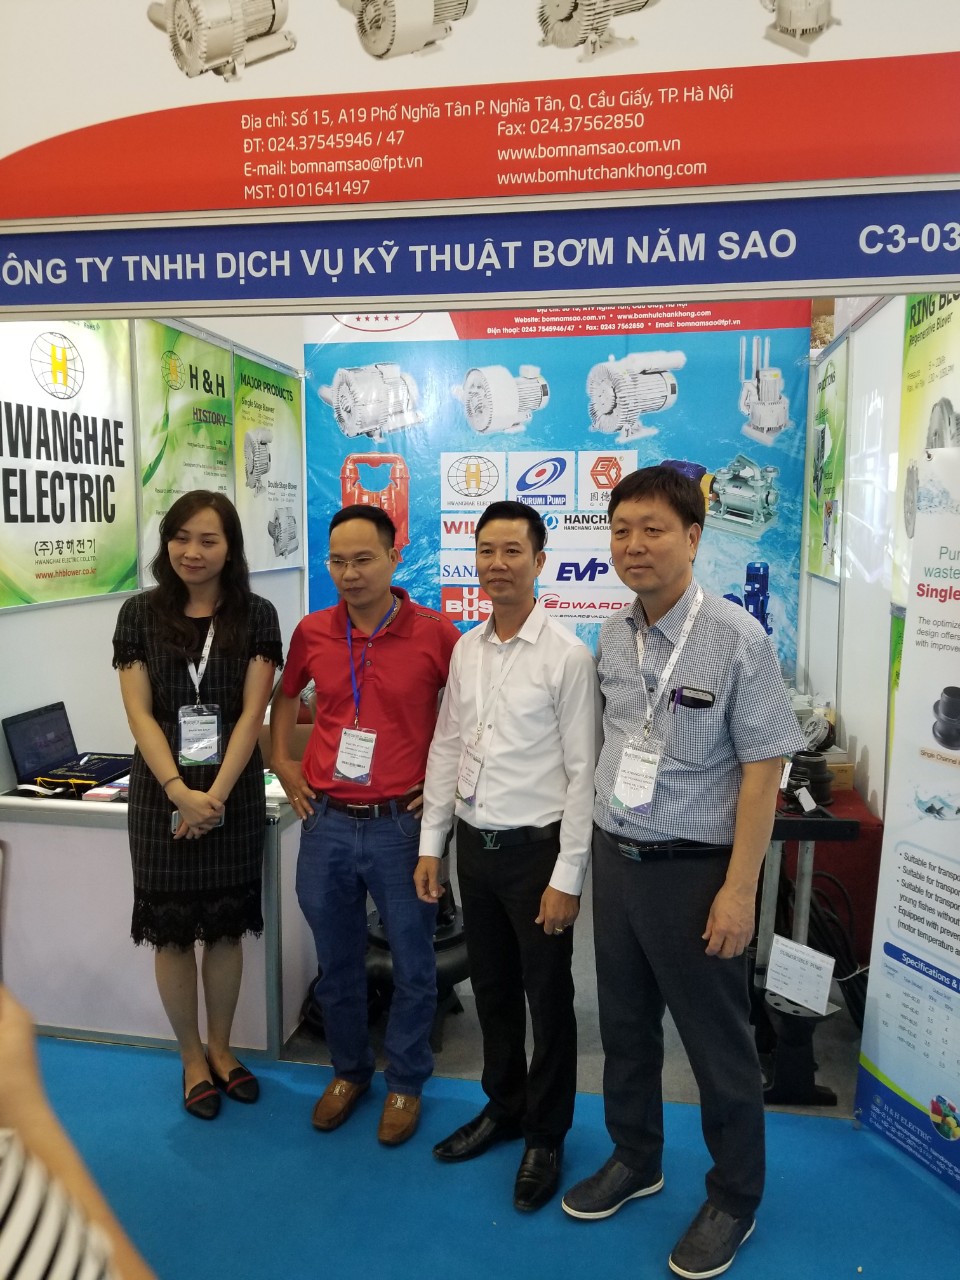 Công ty TNHH Dịch vụ kỹ thuật Bơm Năm Sao Tham gia triển lãm VIETWATER 2019